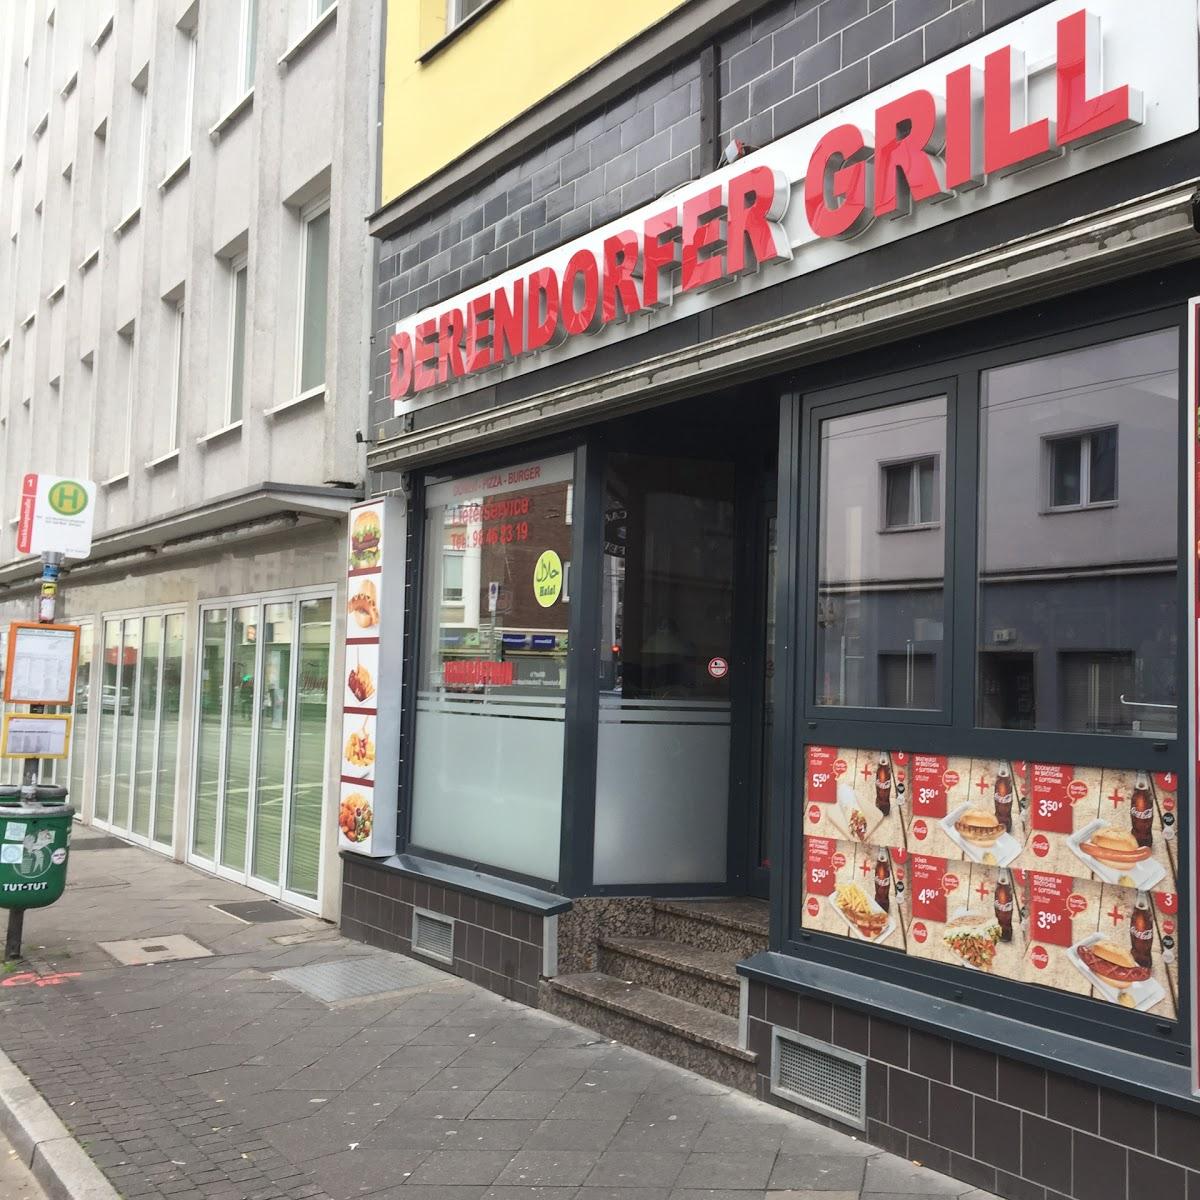 Restaurant "Derendorfer Pizzeria & Kebaphaus" in Düsseldorf